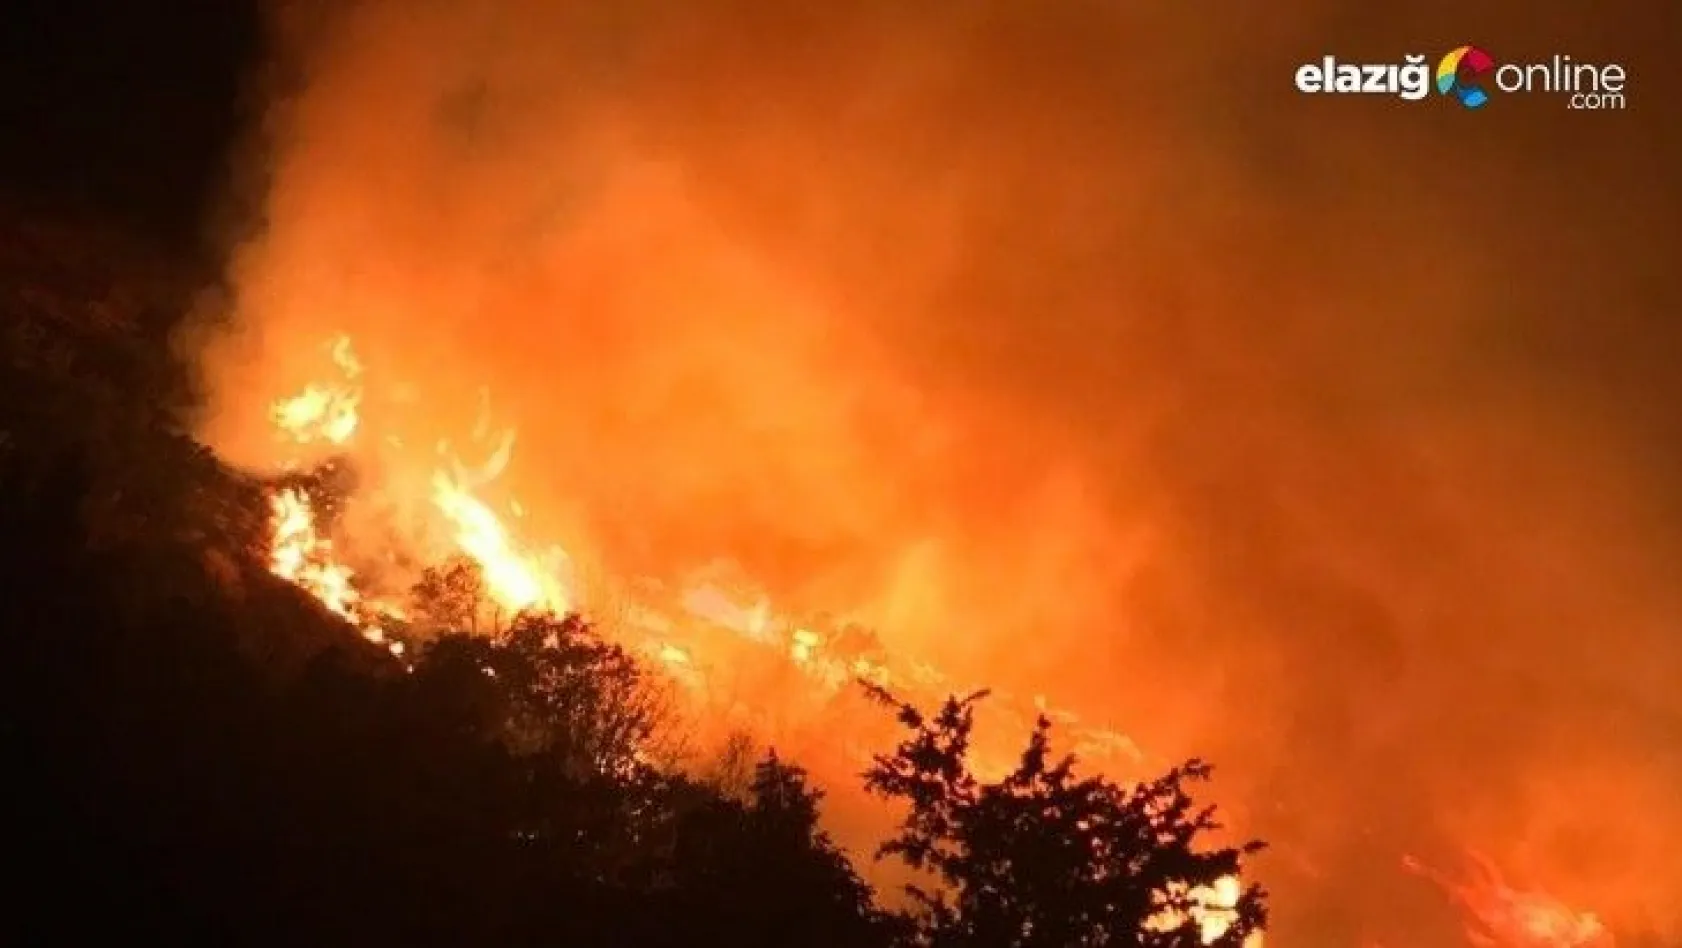 Elazığ'daki orman yangını sürüyor